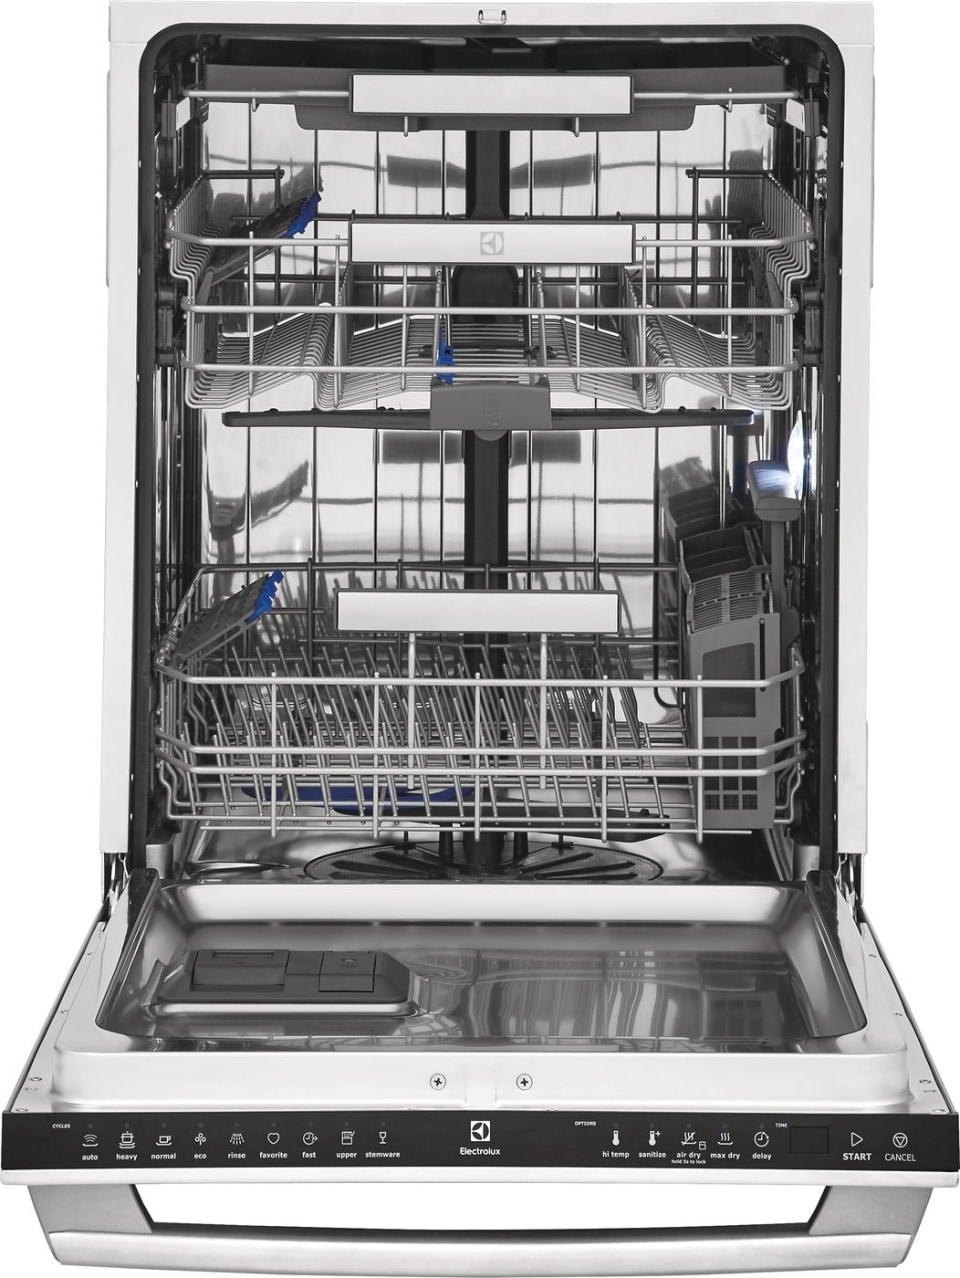 Встроенная посудомойка 45 см рейтинг. Посудомоечная машина Electrolux 45 см. Электролюкс посудомойка 45 встраиваемая. ПММ Электролюкс 45 встраиваемая. Электролюкс посудомоечная машина 45 см.